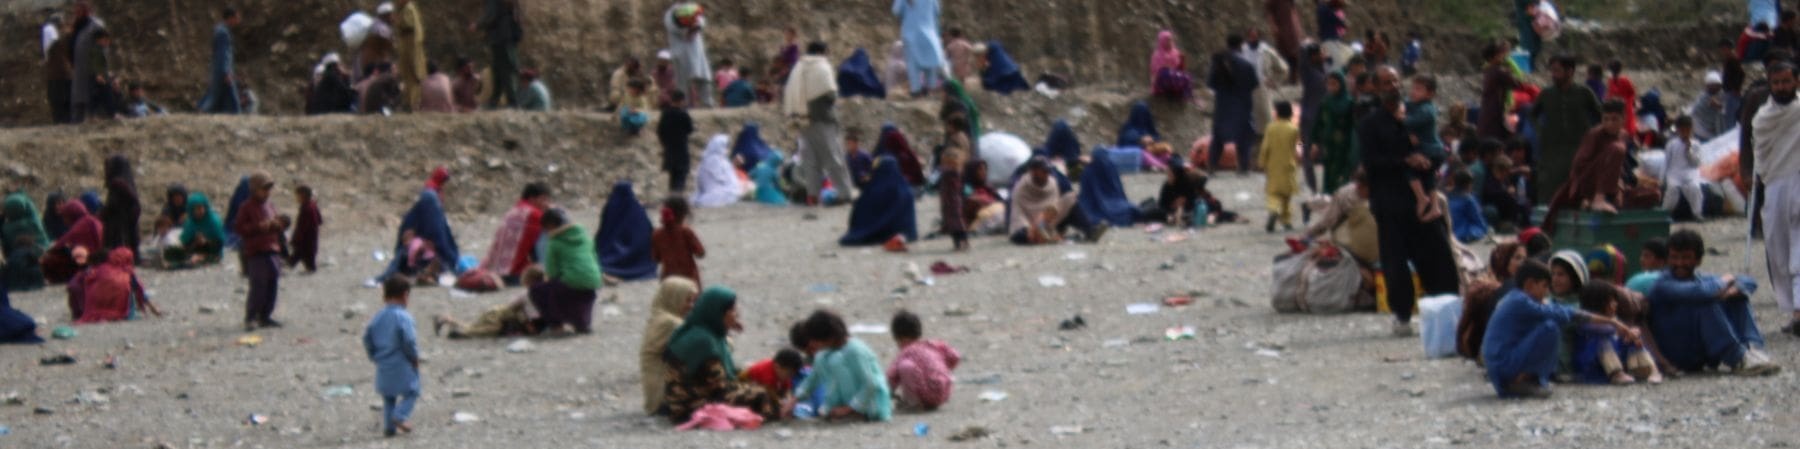 bambini e famiglie seduti a terra tornati dal pakistan in afghanistan 